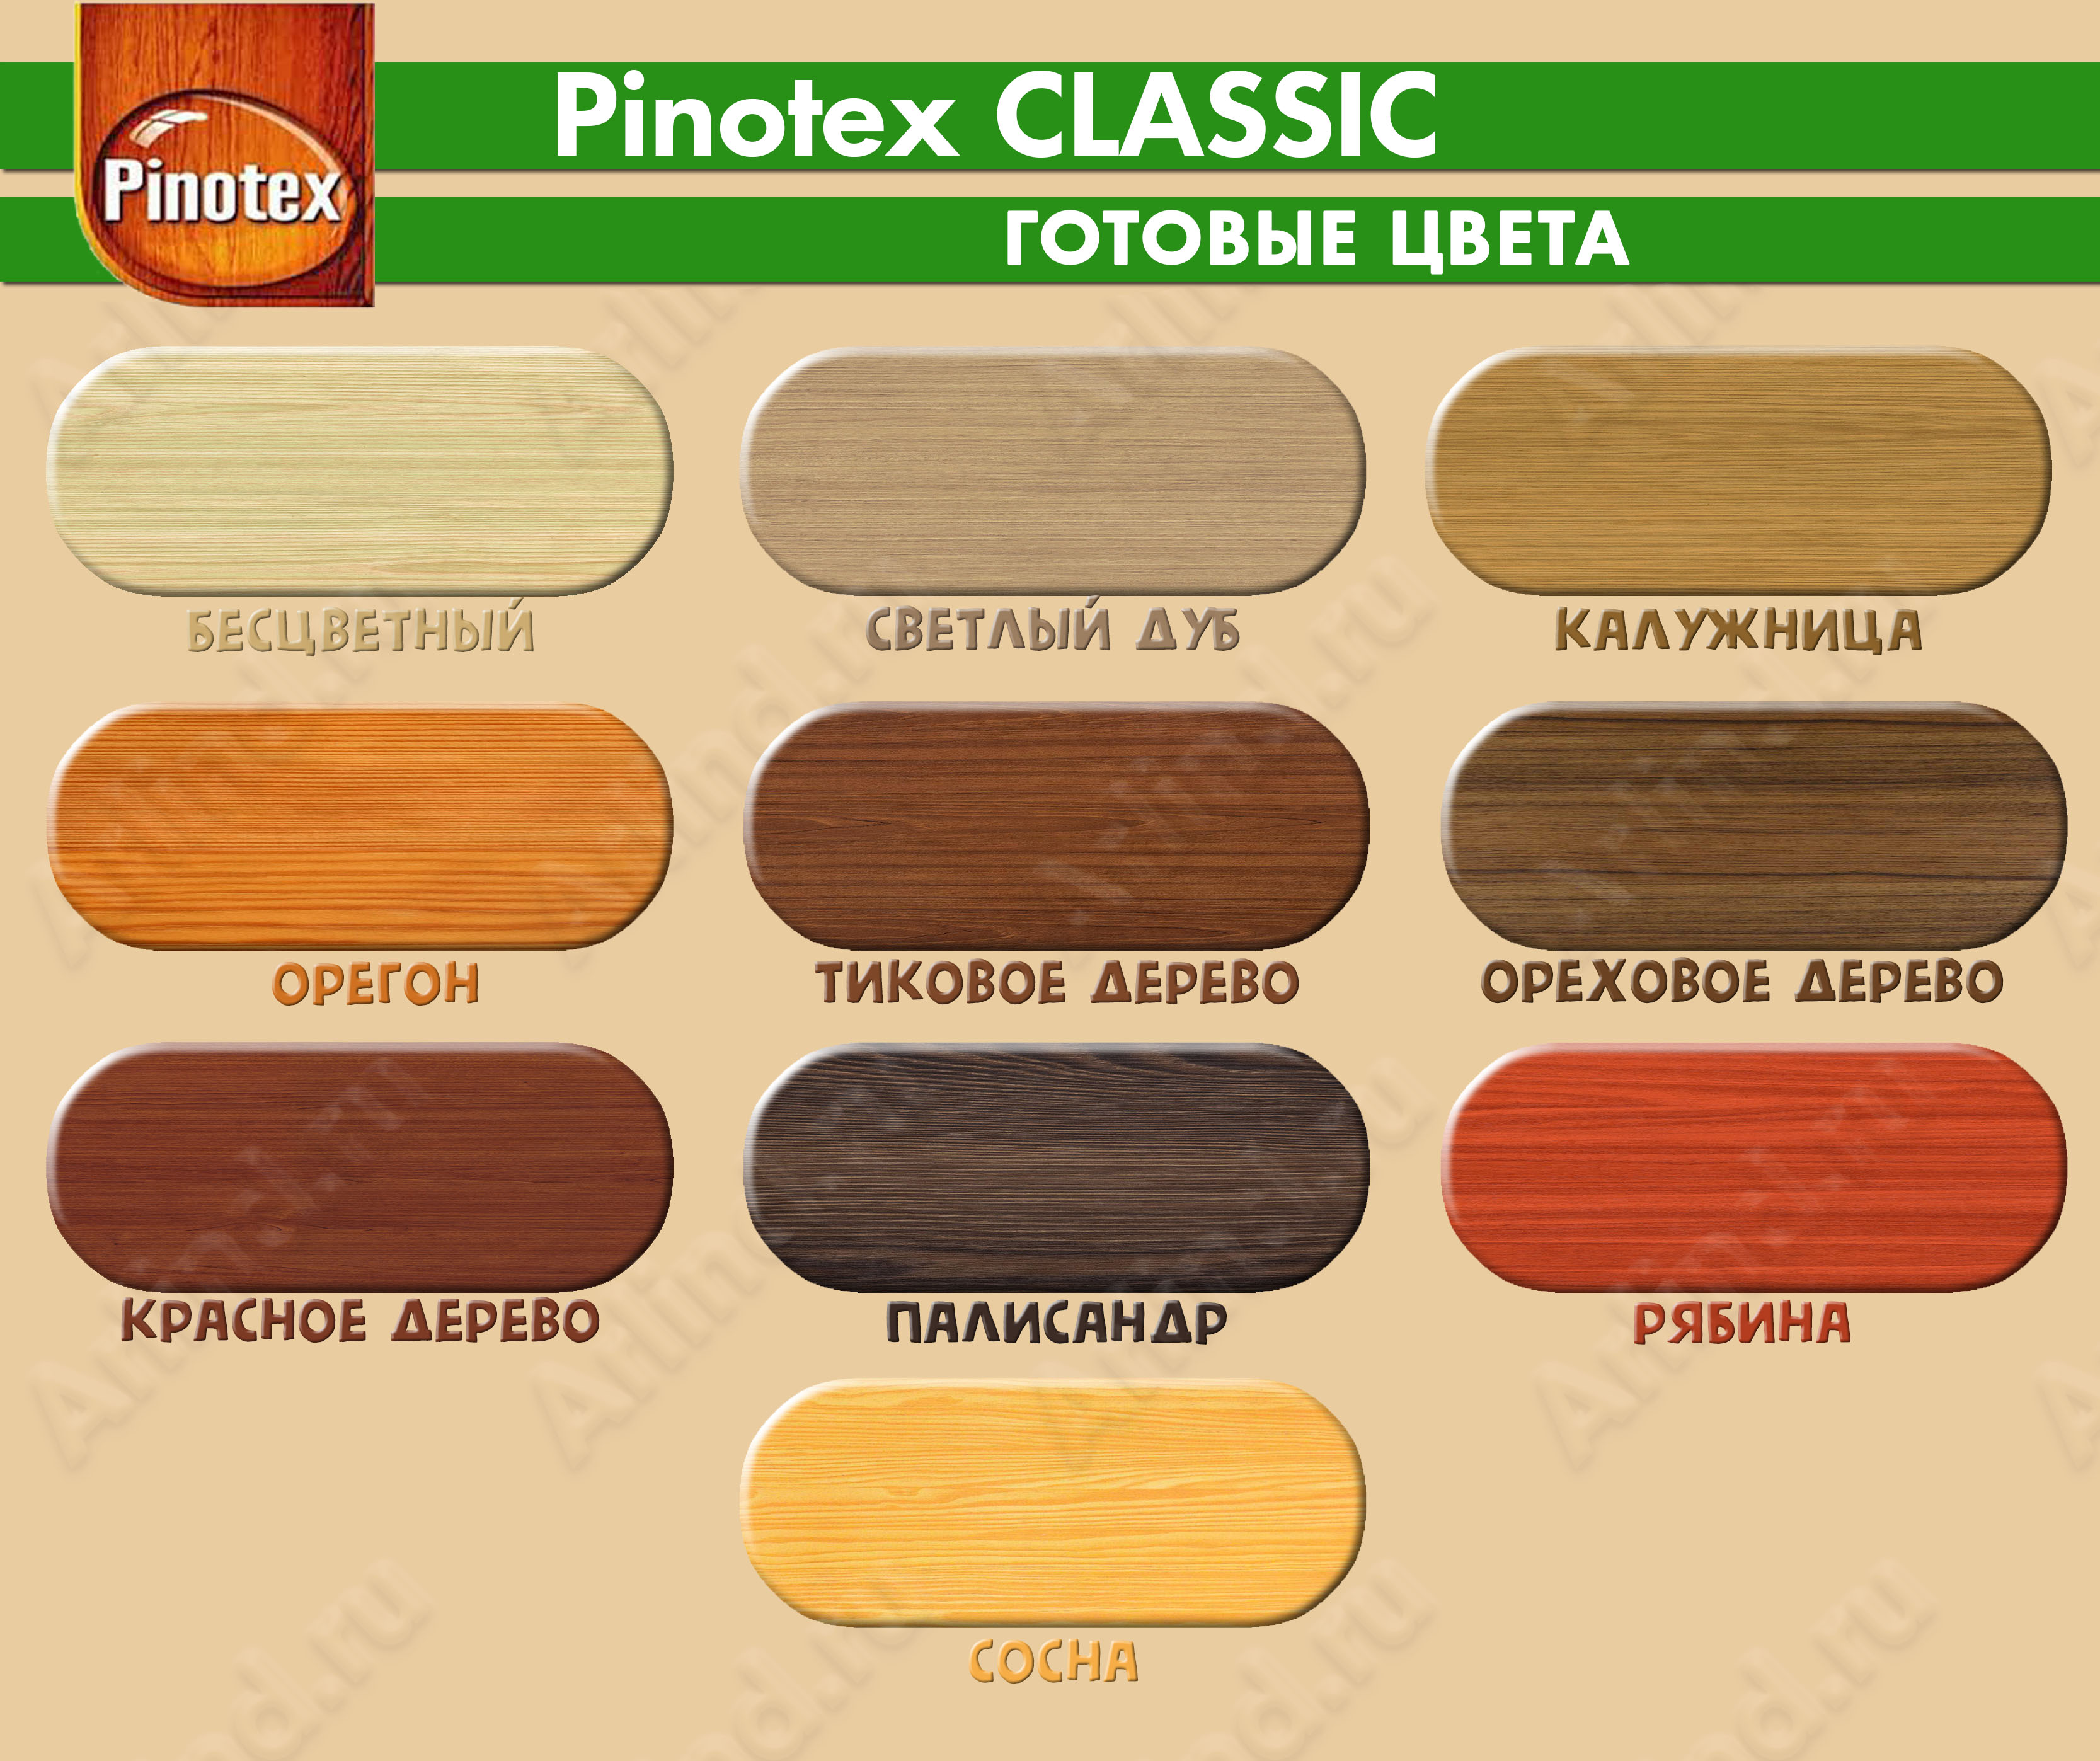 Цветовая палитра антисептика для дерева Pinotex Classic с номерами цветов